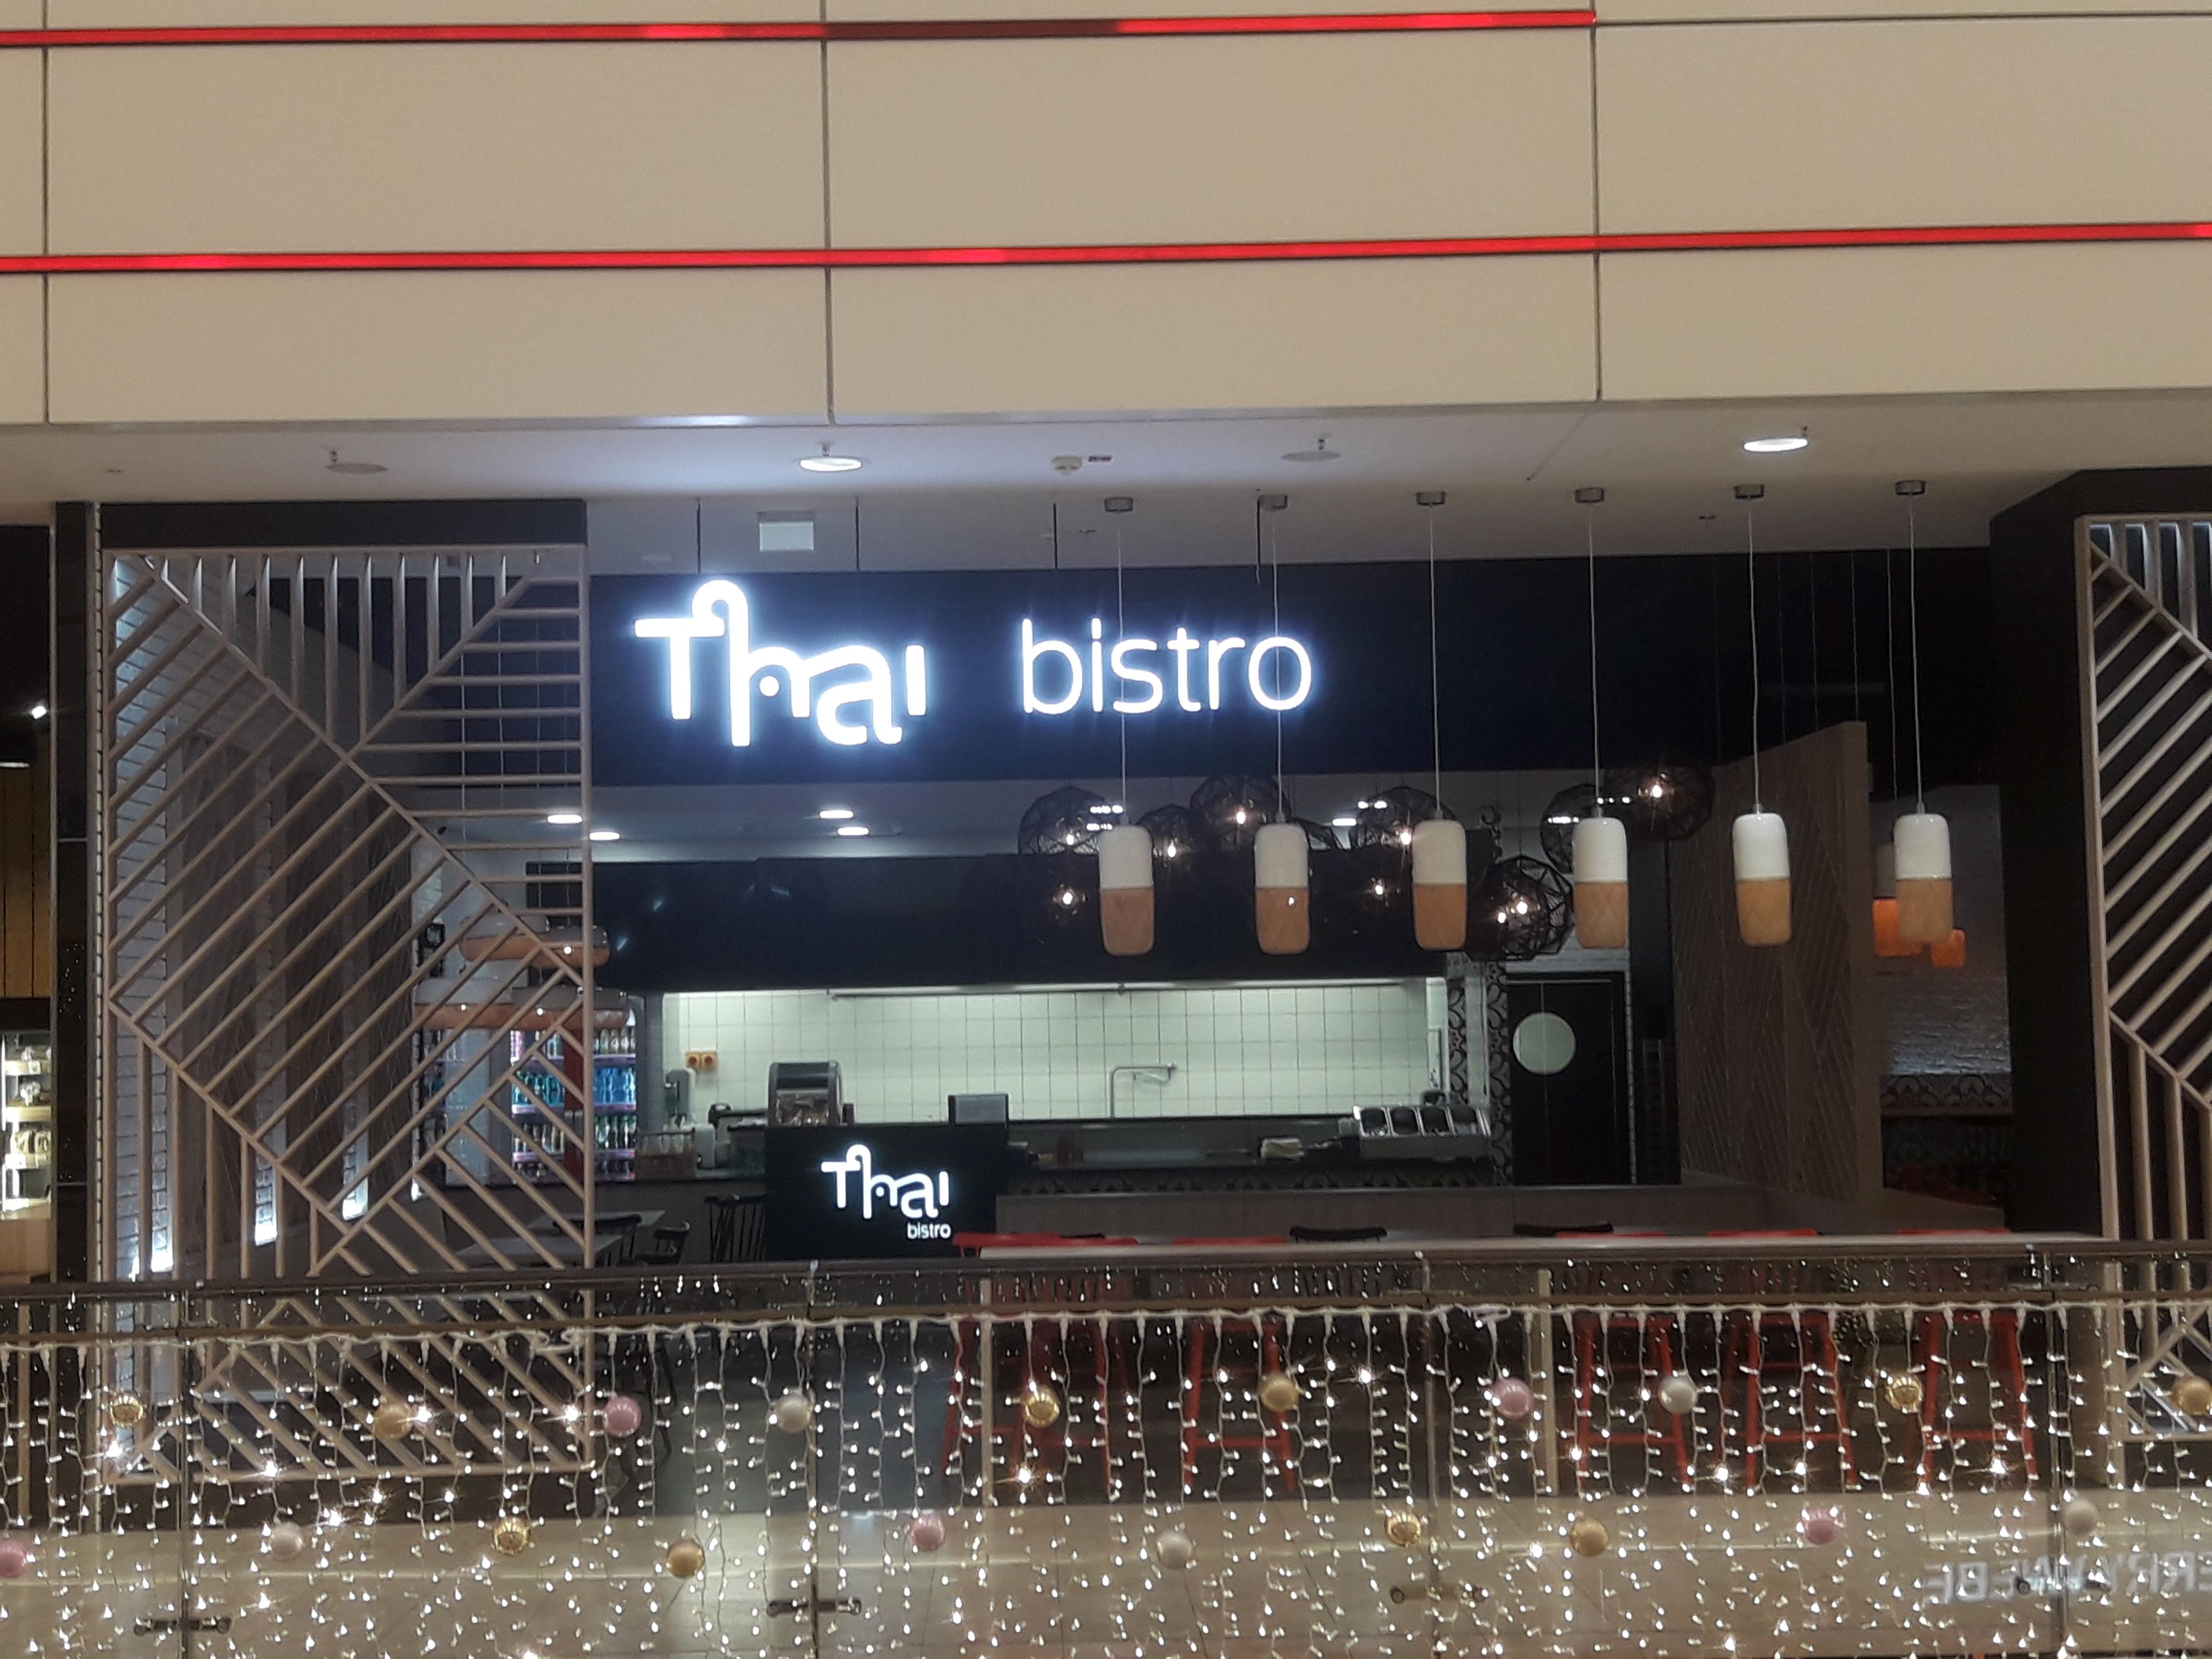 Thai bistro